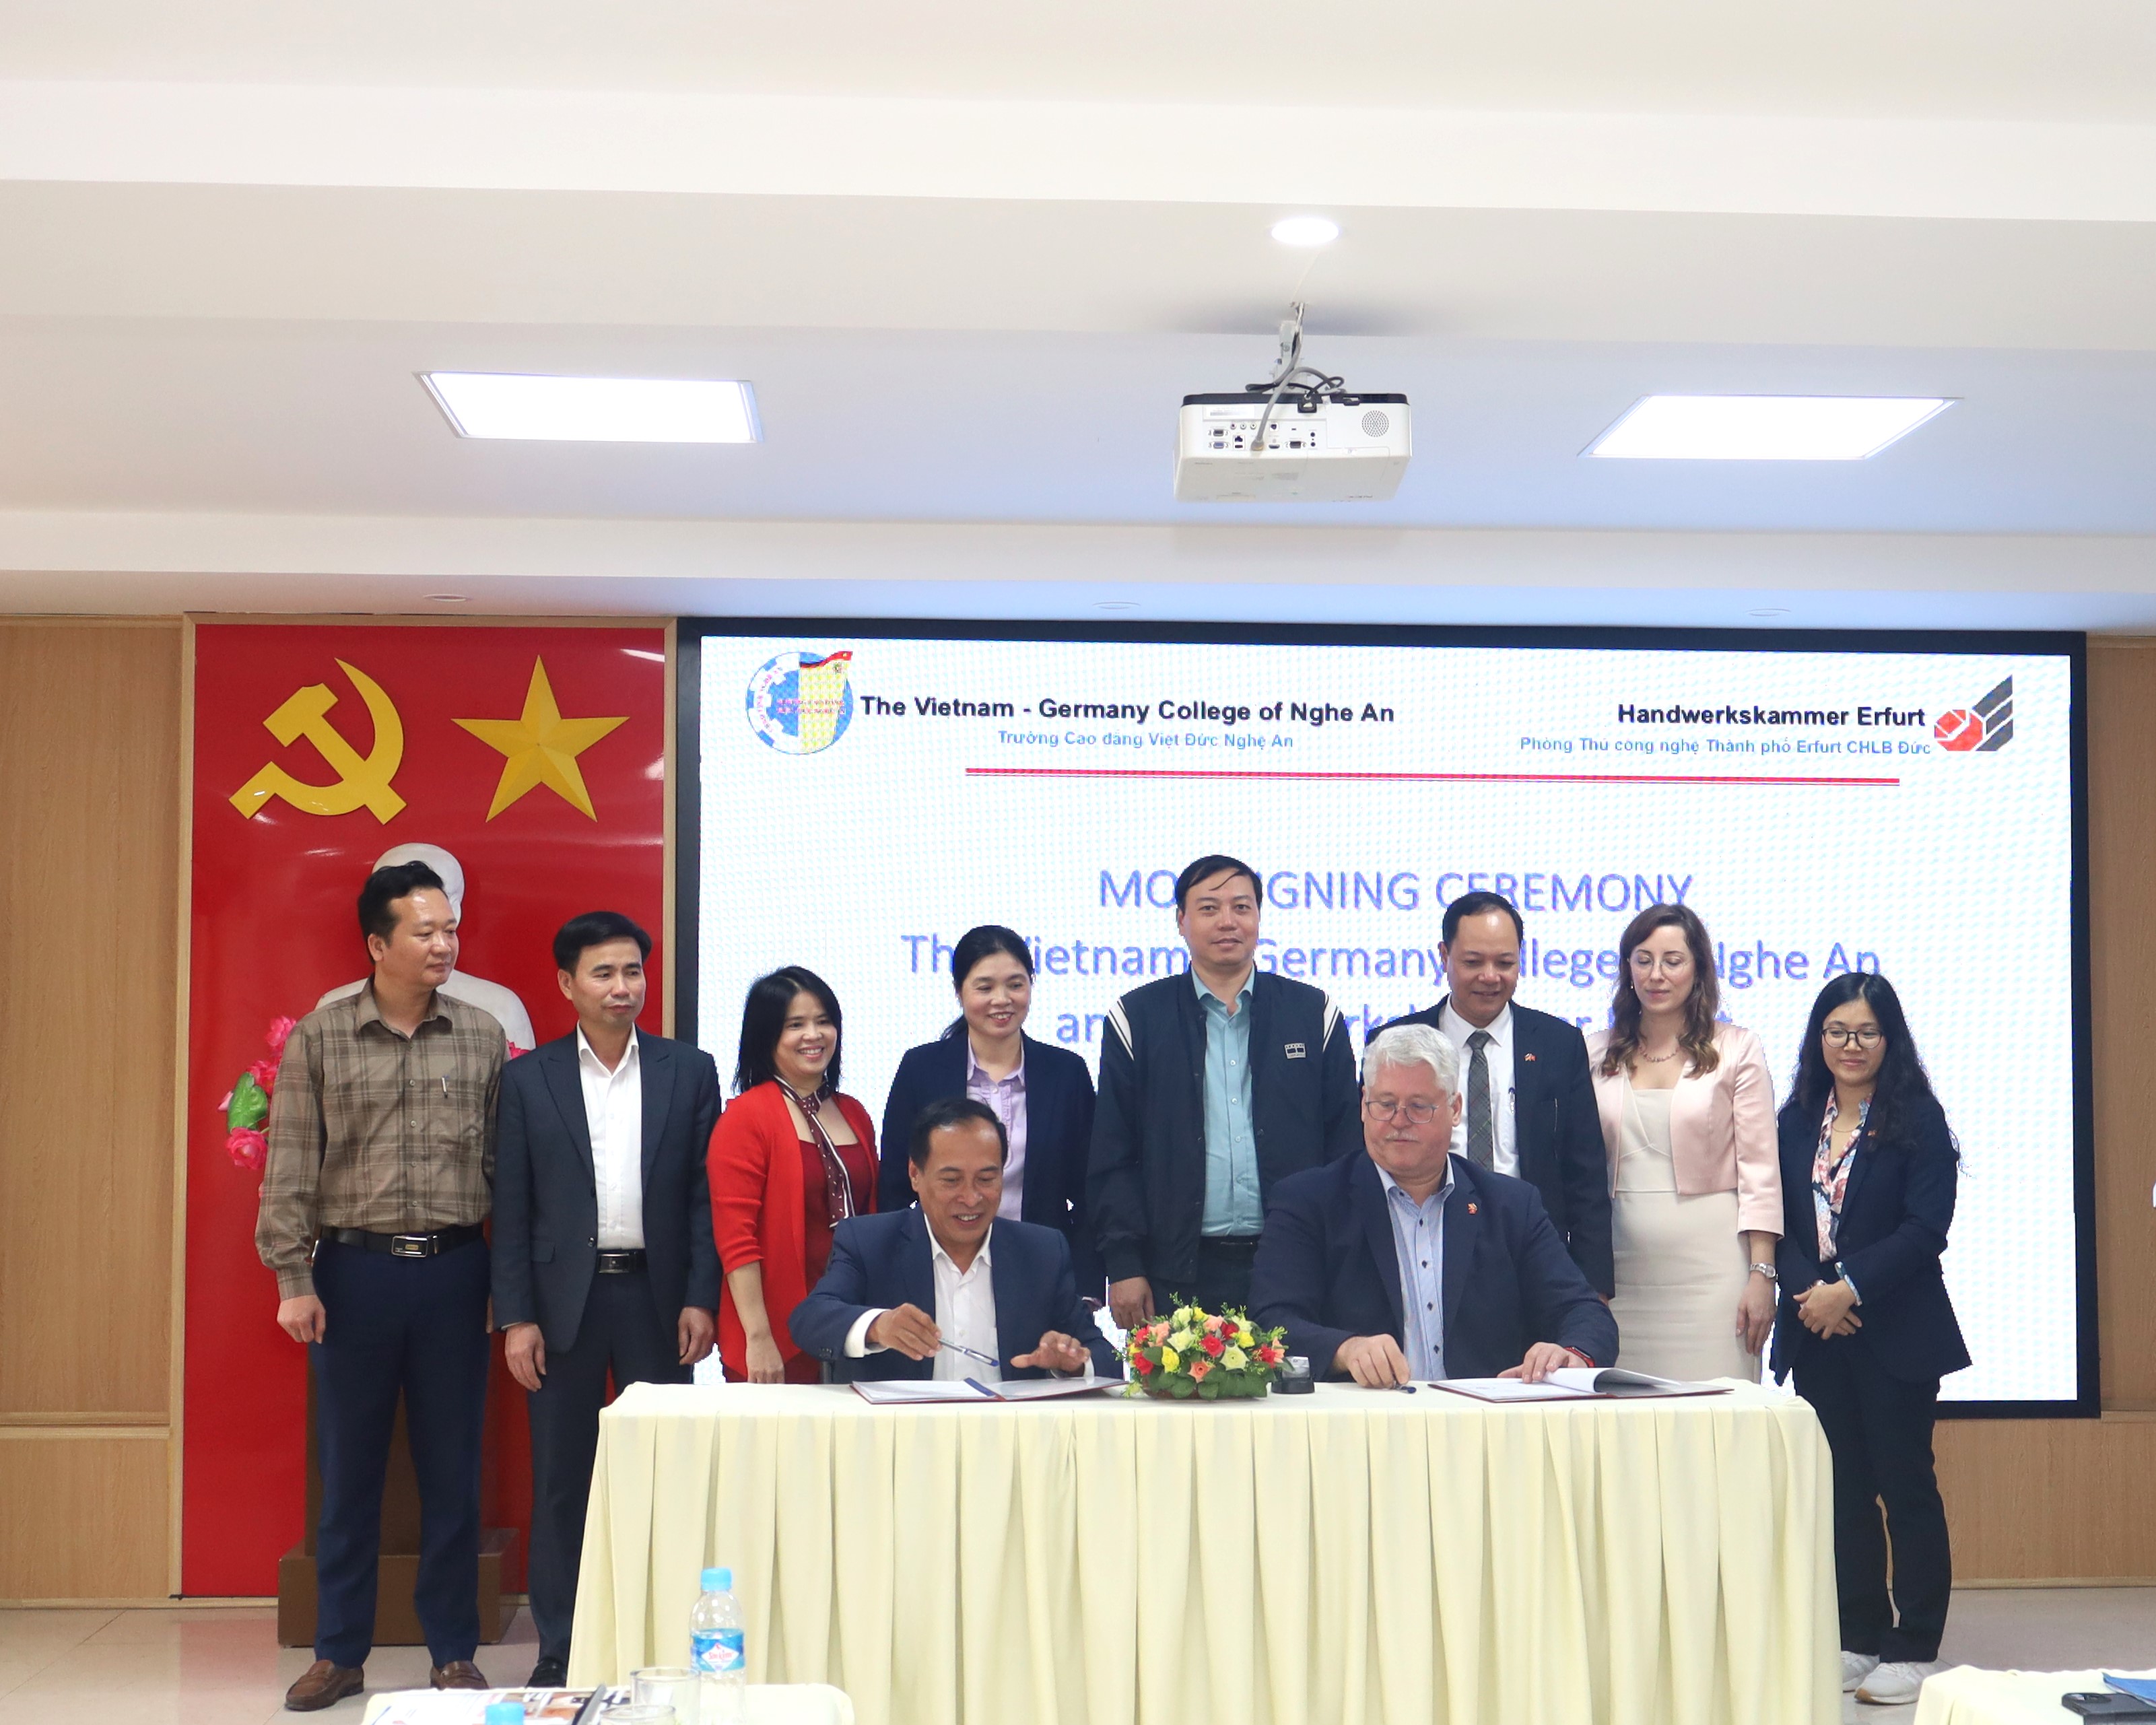 Trường Cao đẳng Việt – Đức Nghệ An ký kết hợp tác đào tạo song phương với Phòng Thủ công nghệ thành phố Erfurt, Cộng hòa Liên Bang Đức